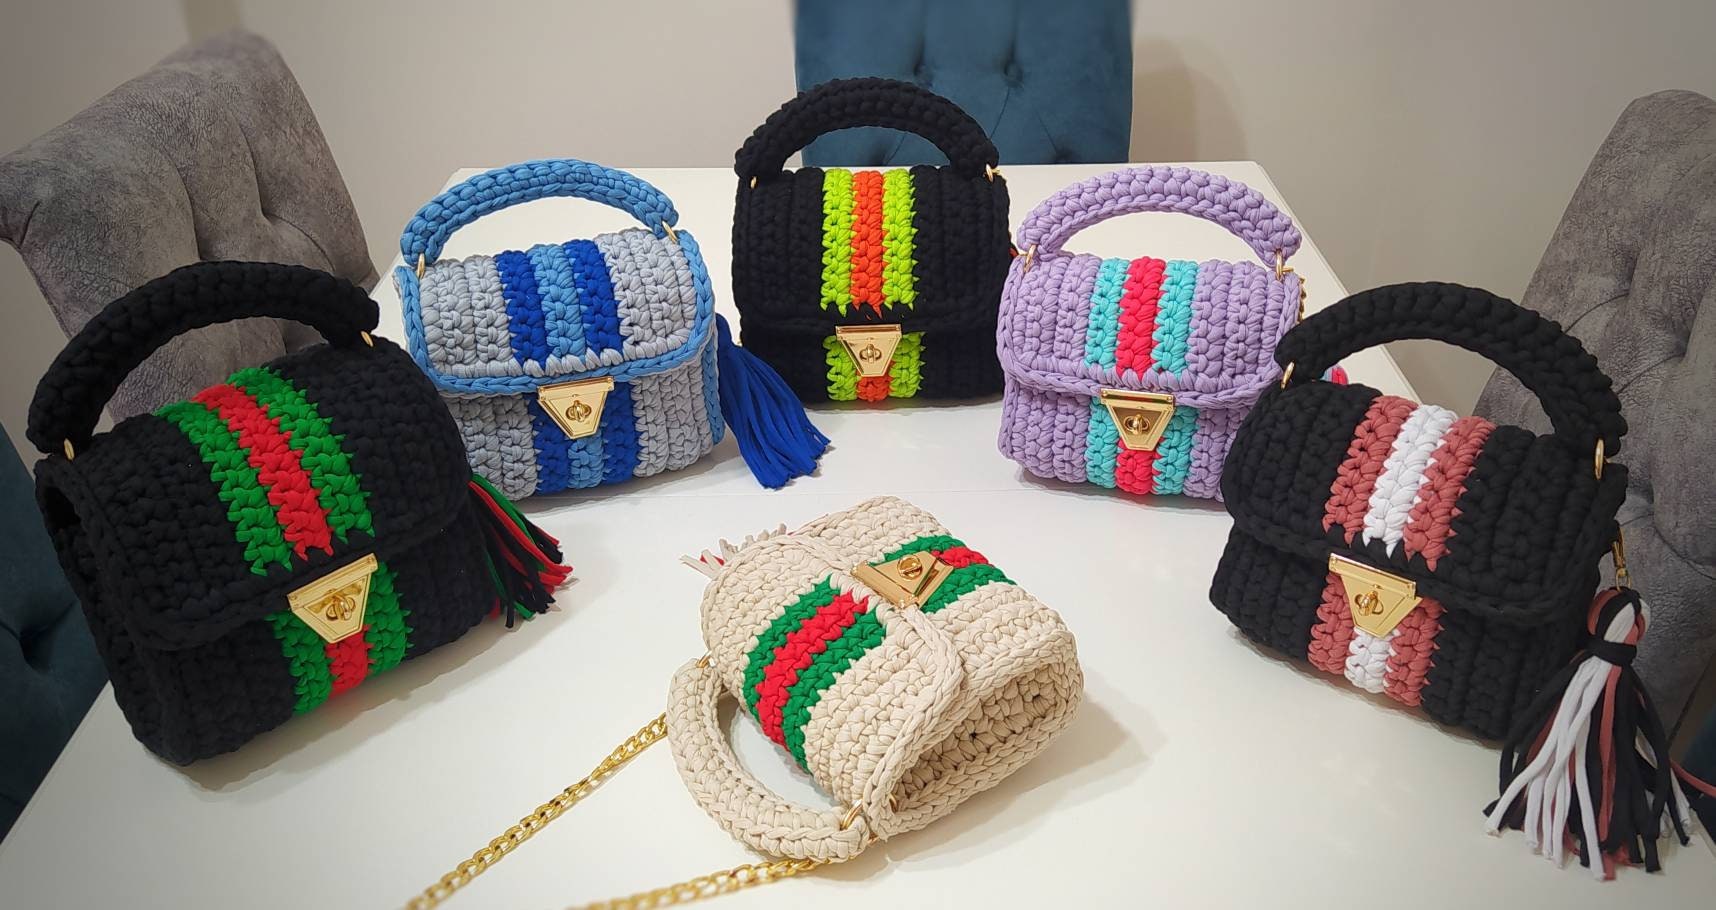 Multi Color Bag,Hand Woven Bag, Women's Bag,Crochet Bag,Knitted Bag,Colorful Bag,Black Bag,Designer Bag,Luxury Bag,Shoulder Bag,Handbags